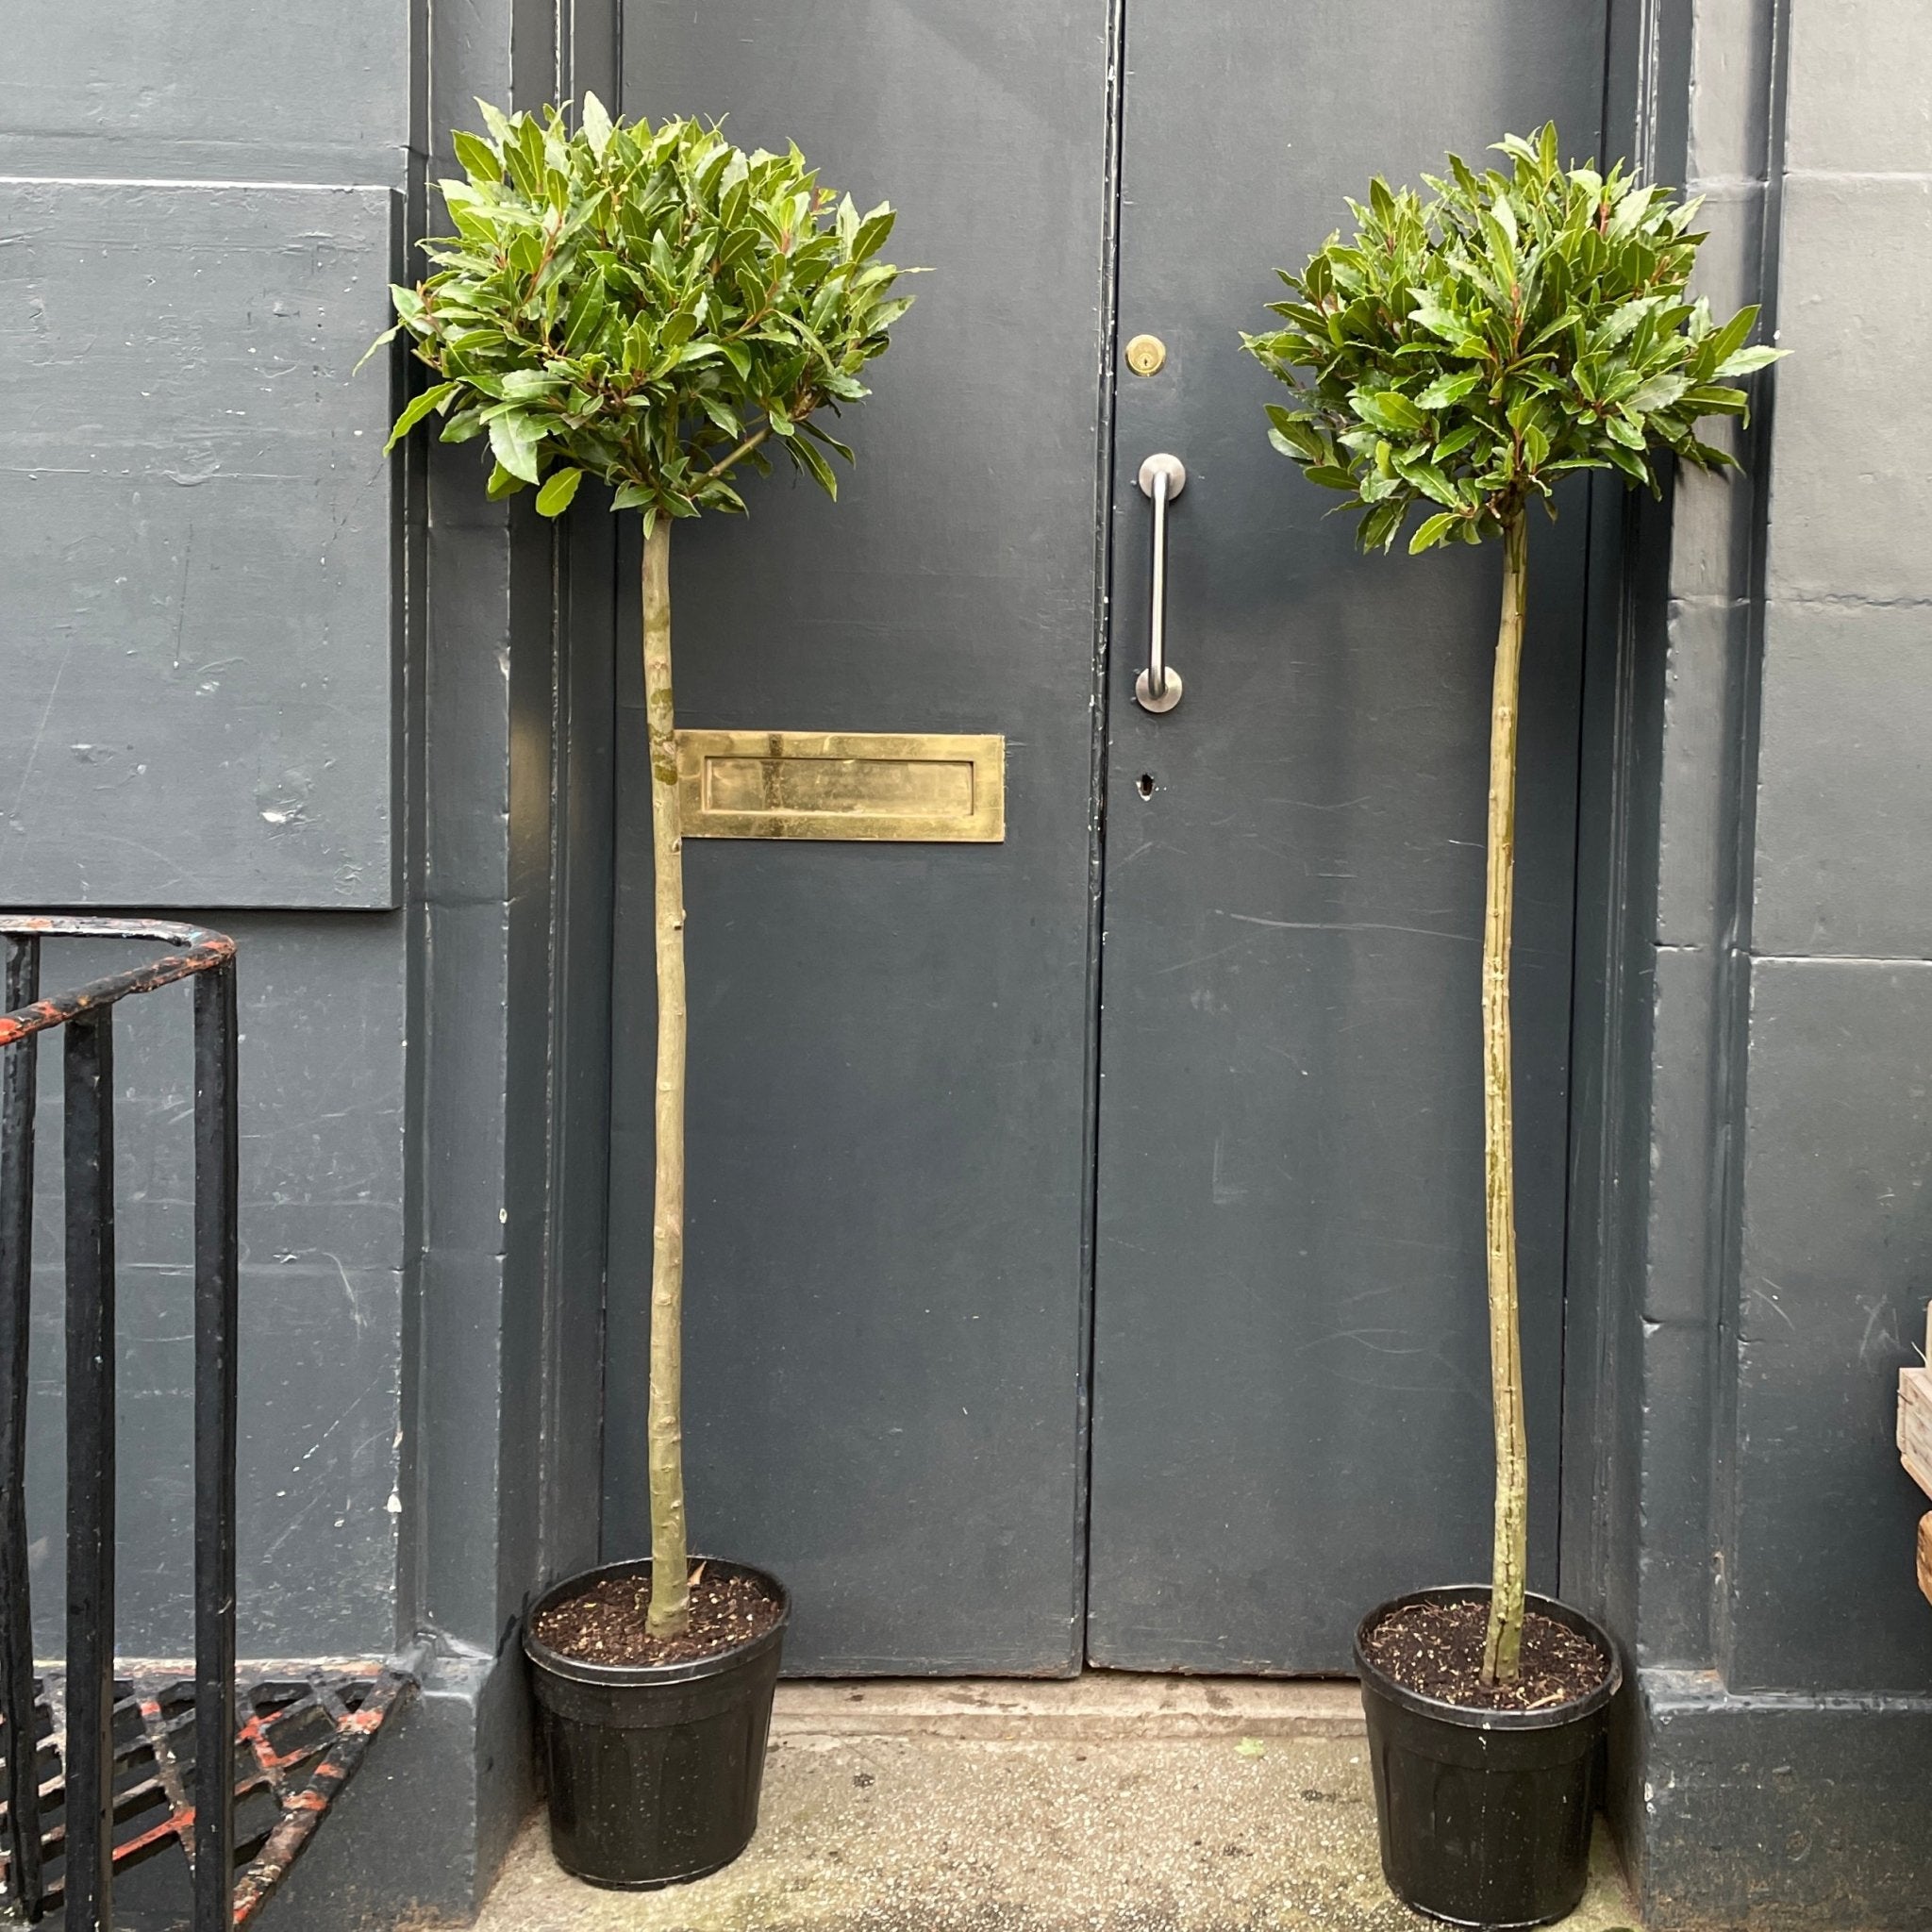 Laurus nobilis (160cm) - grow urban. UK